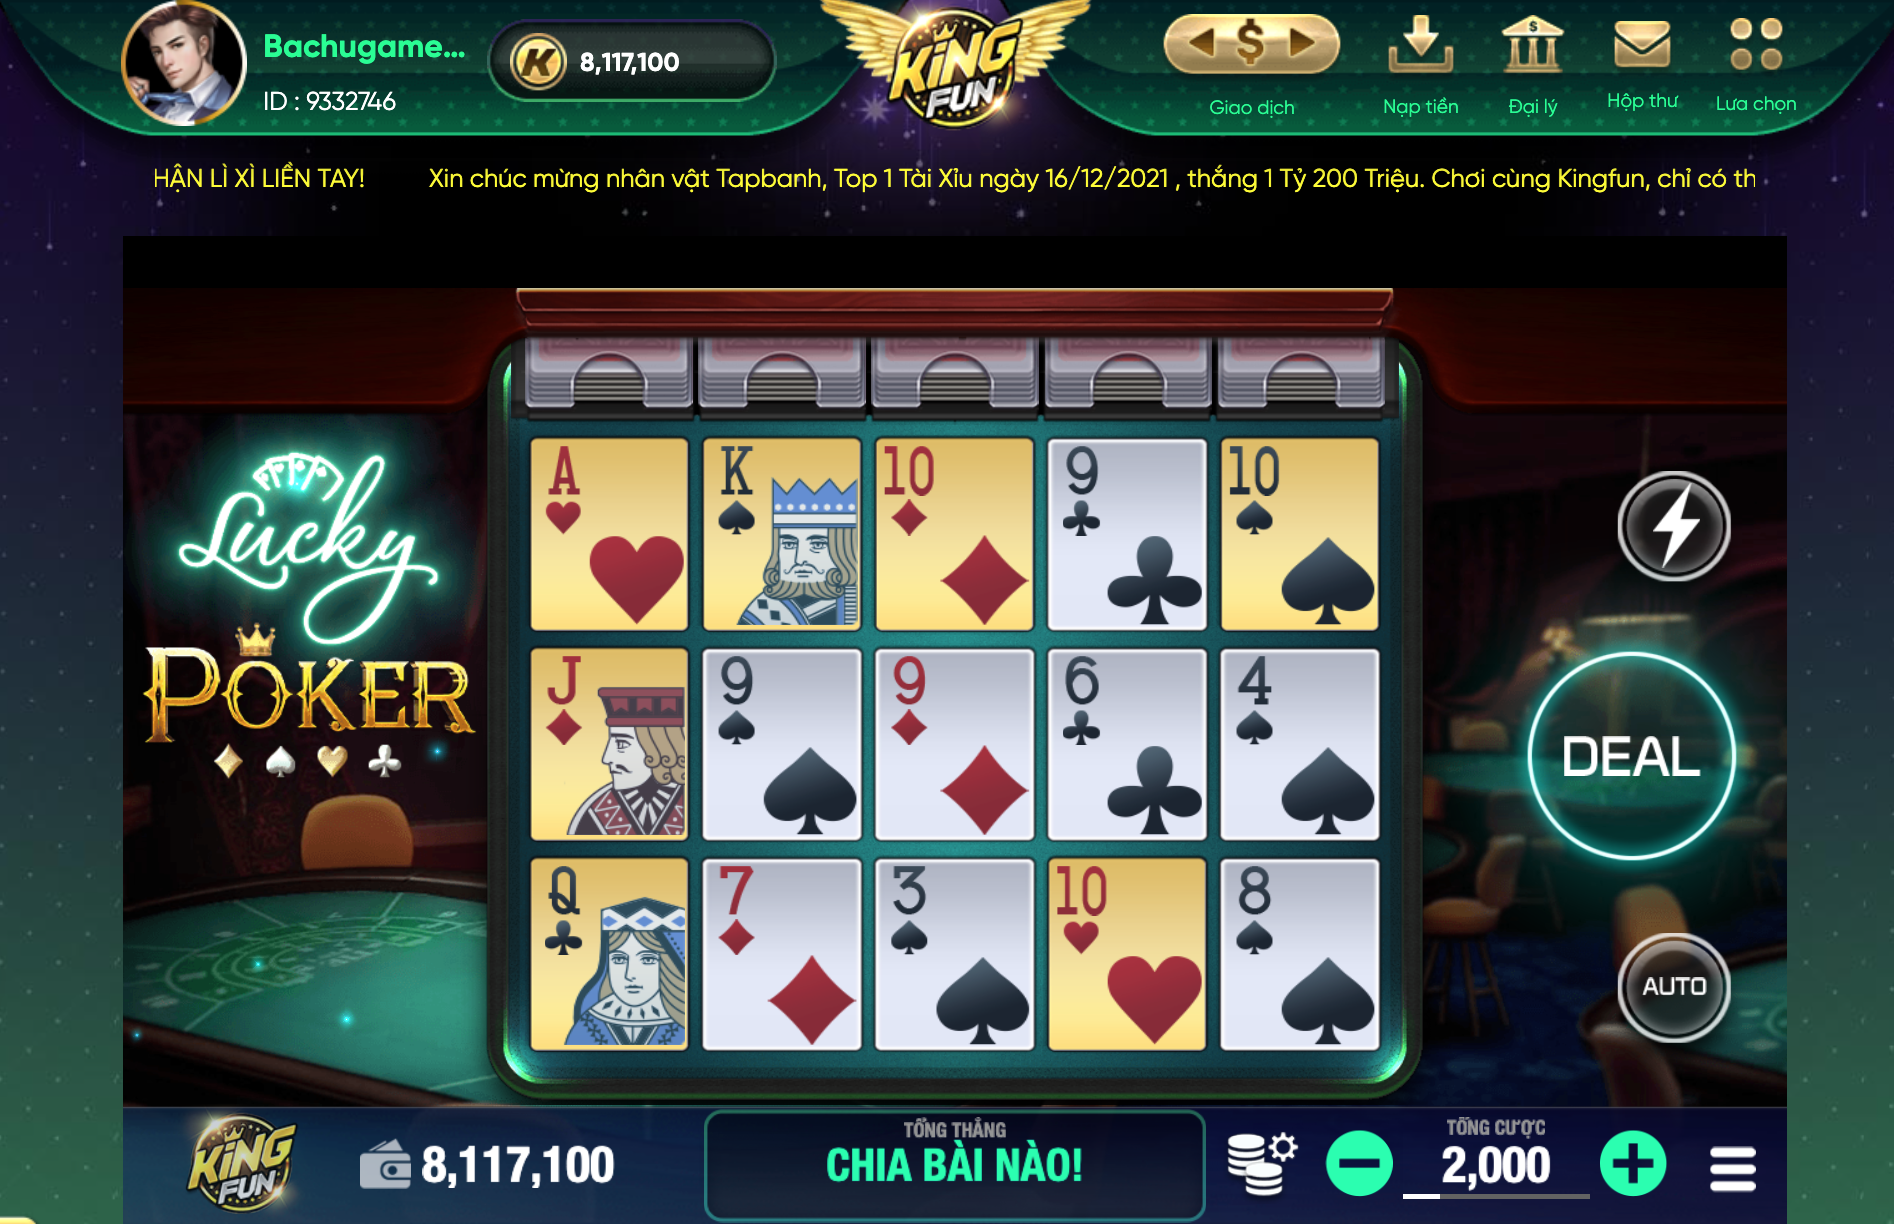 siêu phẩm slot game mới Lucky Poker được ra mắt tại Kingfun